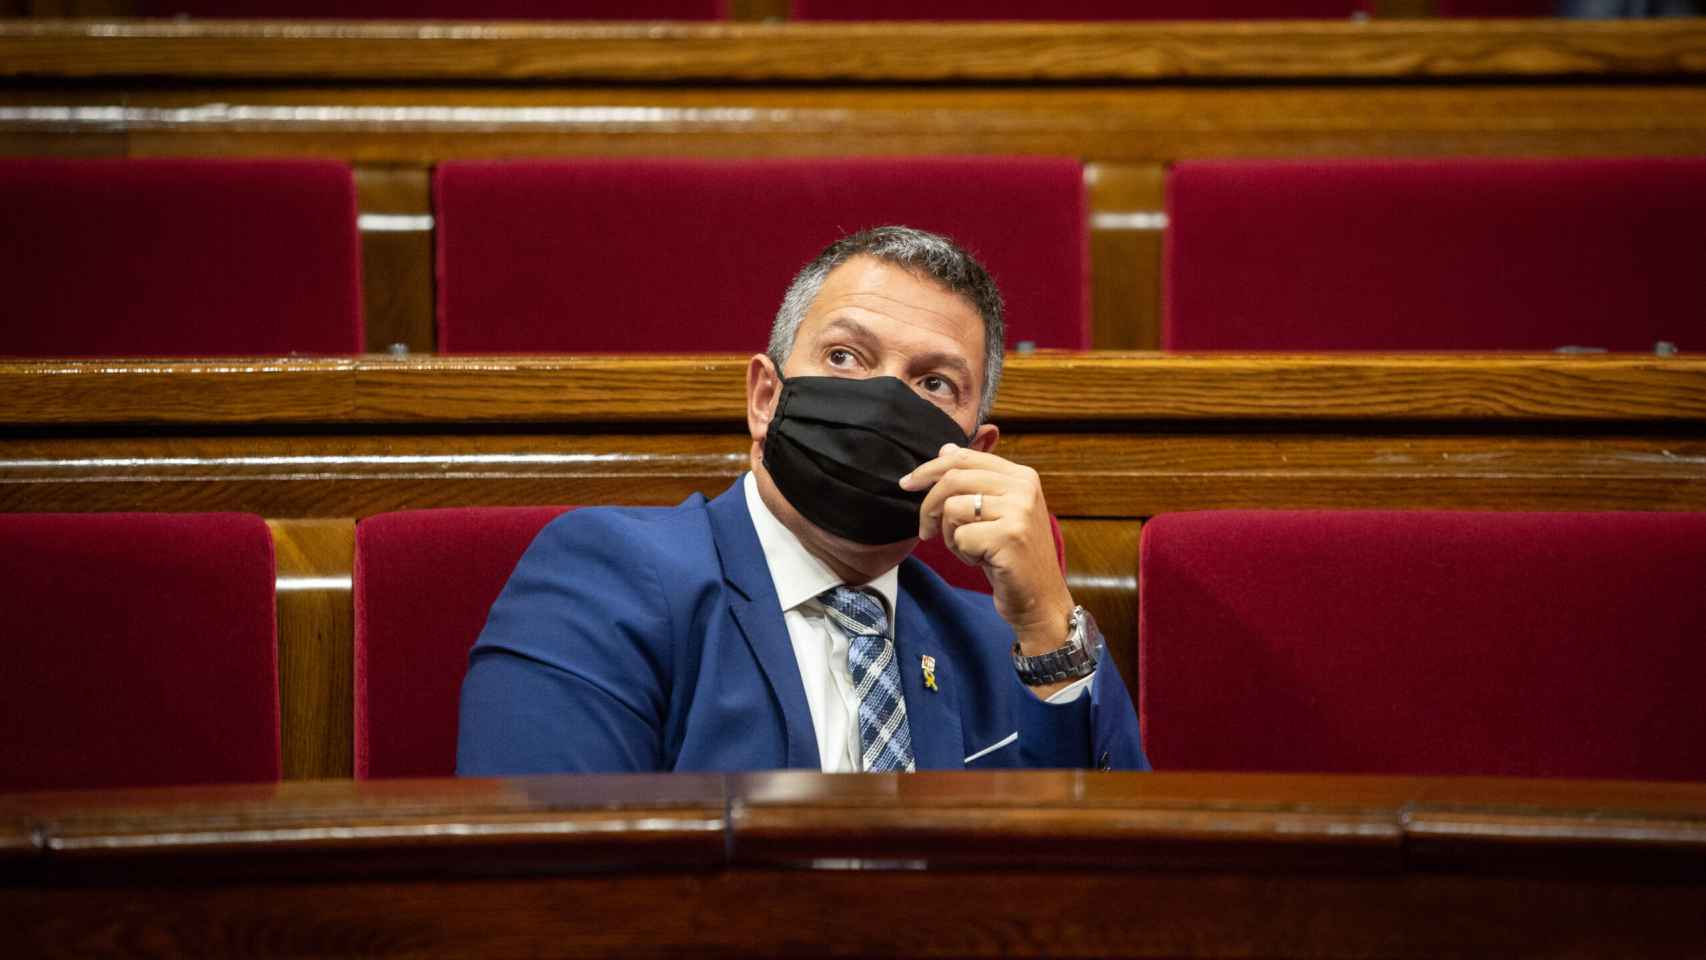 Miquel Samper en el Parlamento catalán durante su etapa como conseller de Interior